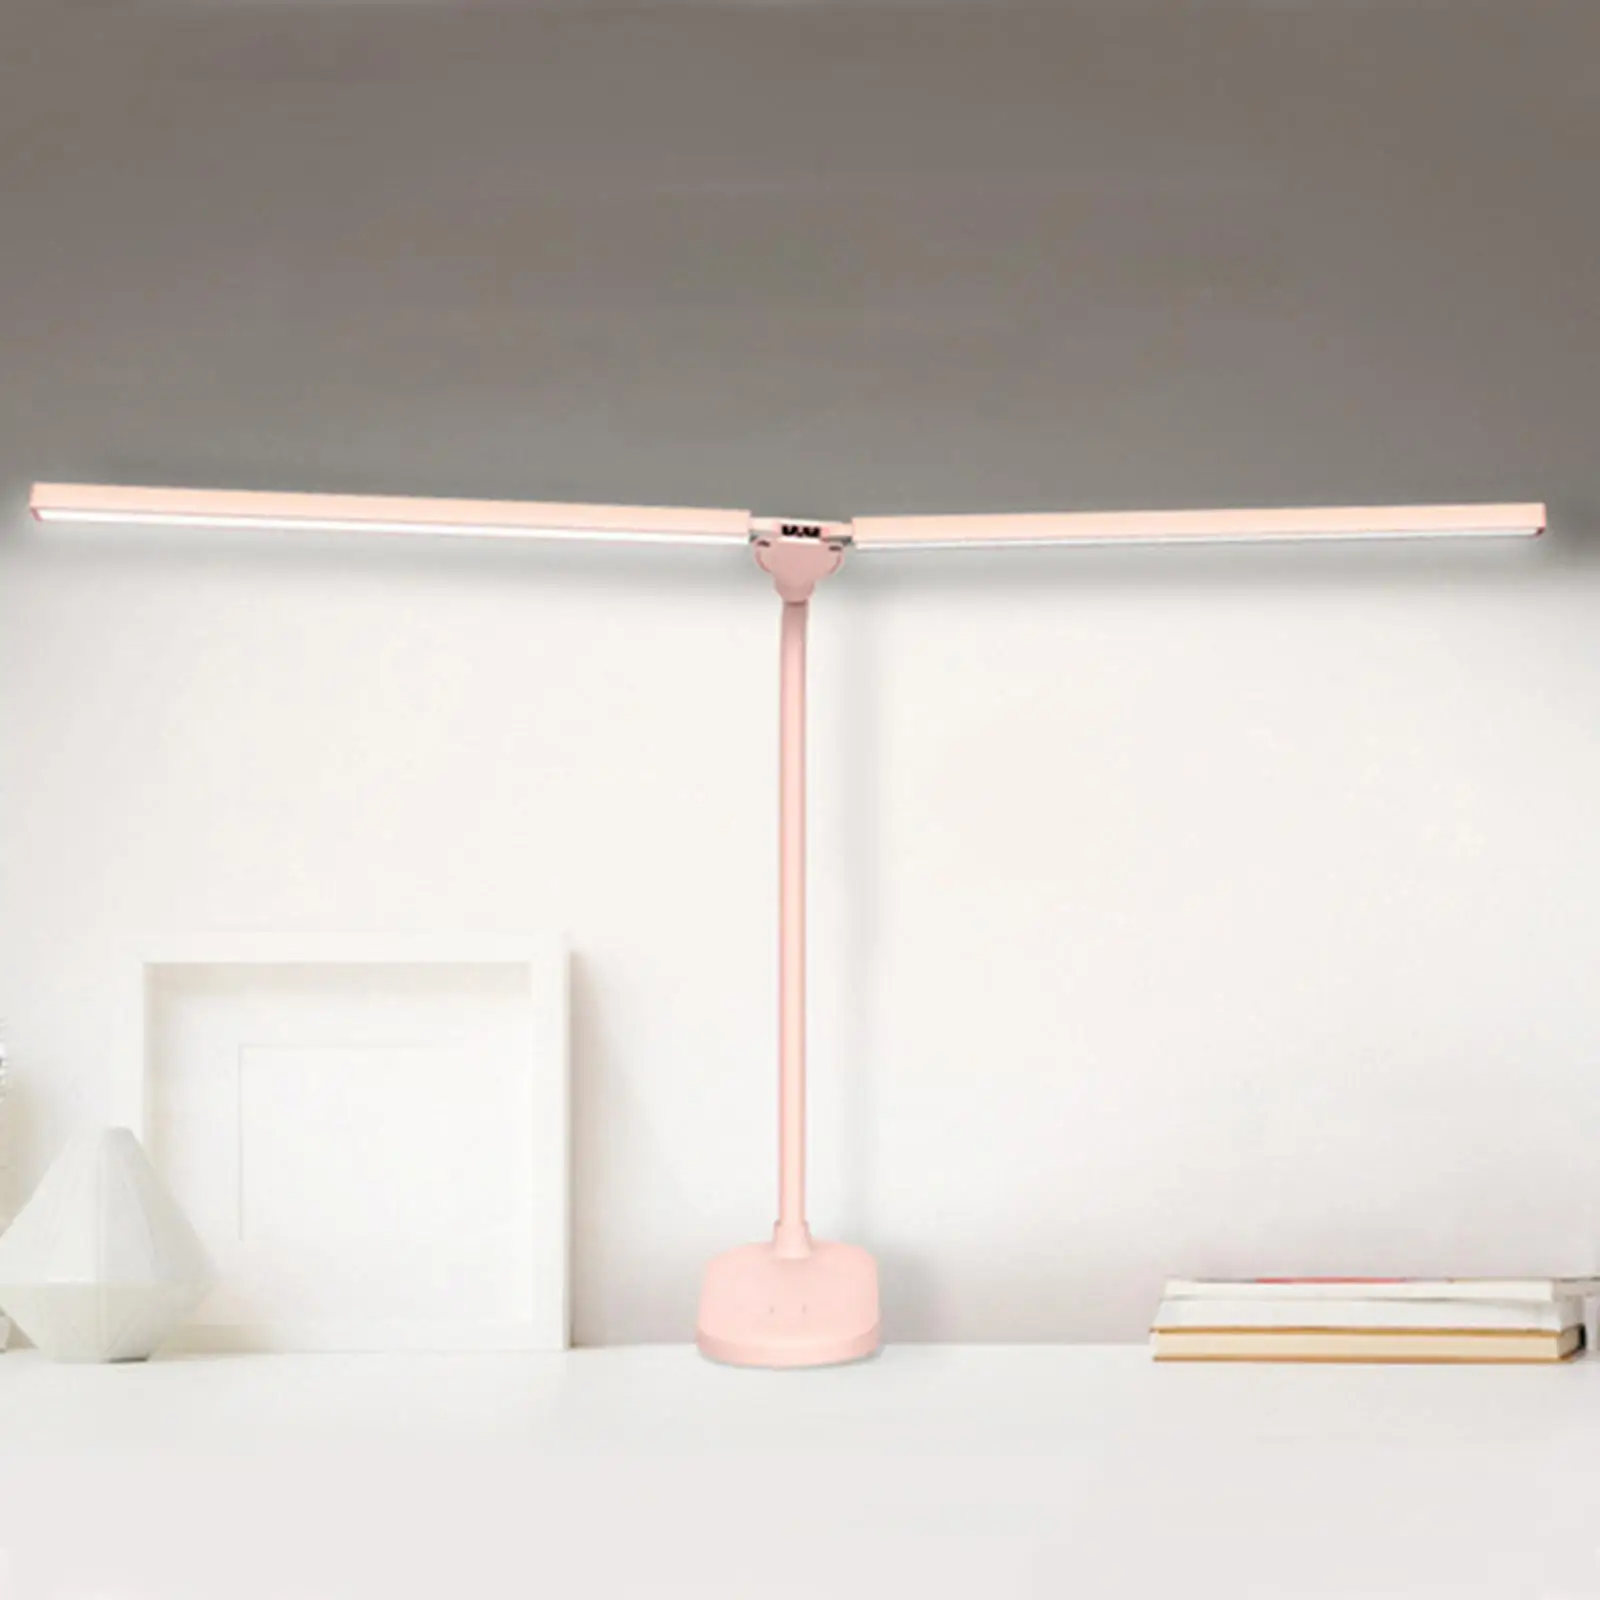 LED USB Reading Light Clip-On Beside Bed Table Desk Lamp for Office Home